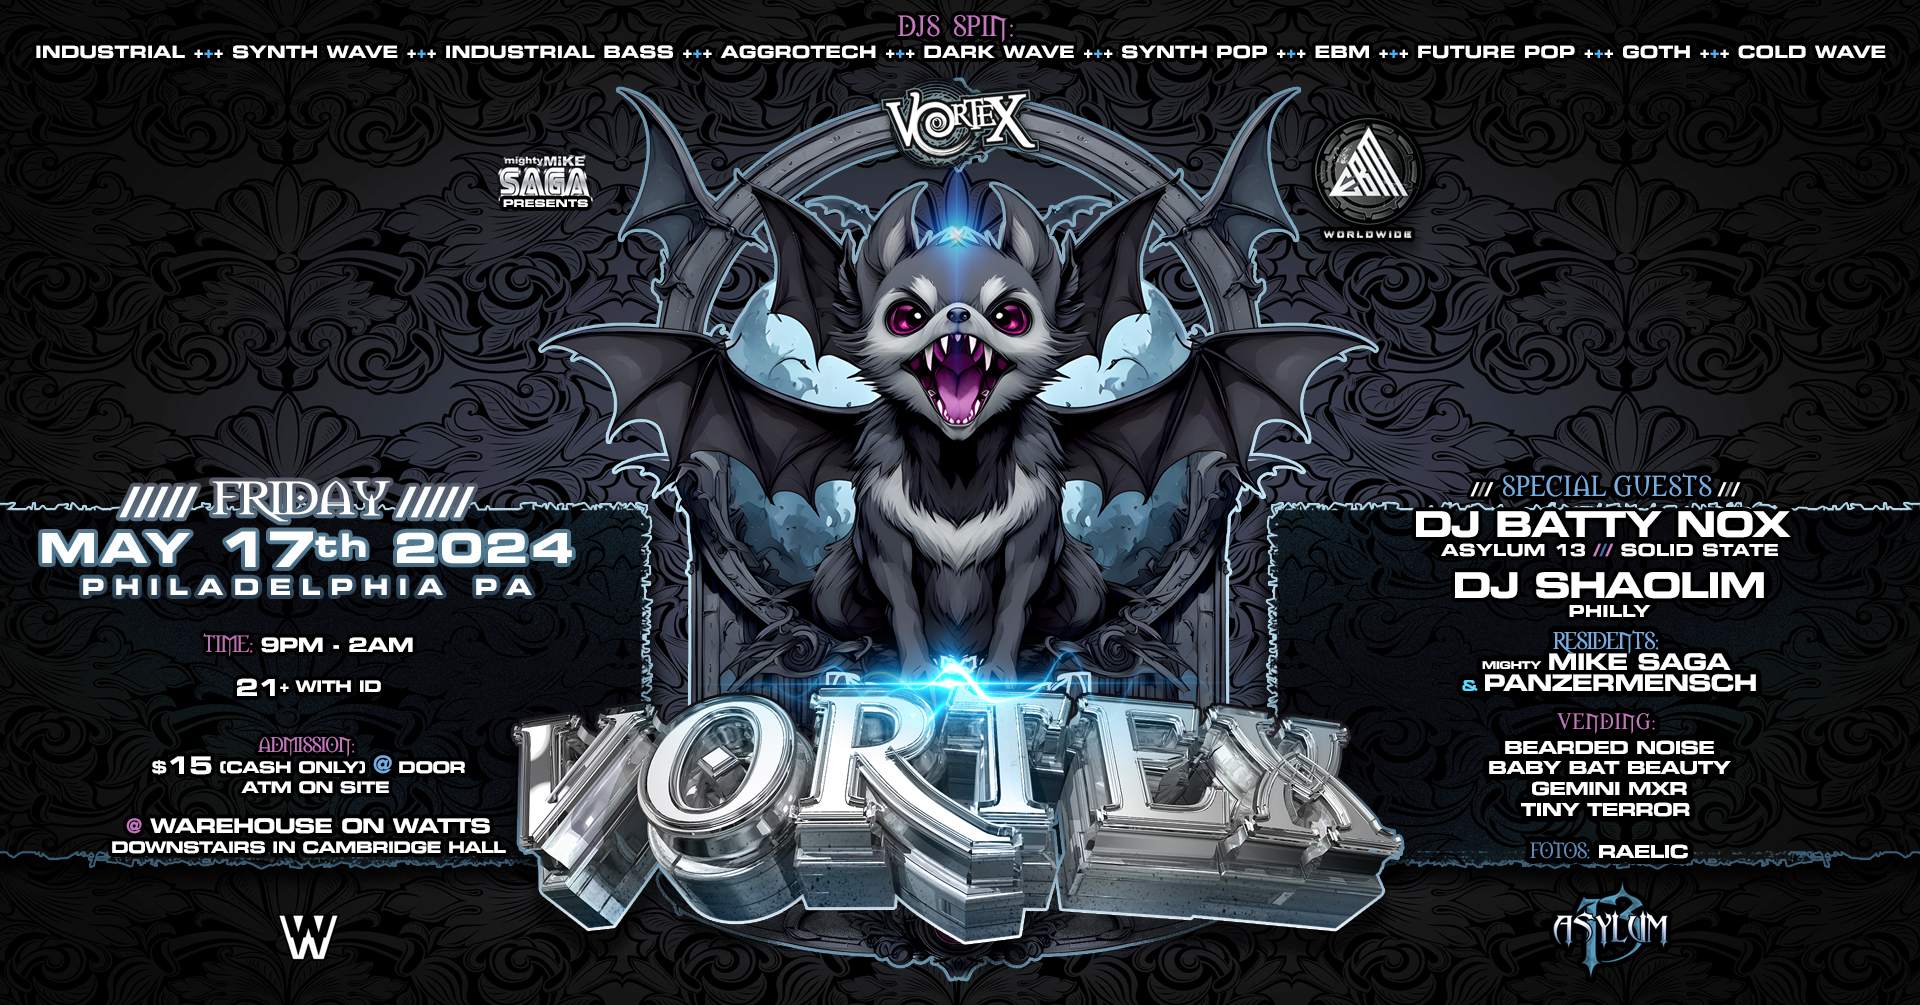 VORTEX! Goth Industrial Dark Wave CyberPunk Club Night Fri May 17th - Página trasera